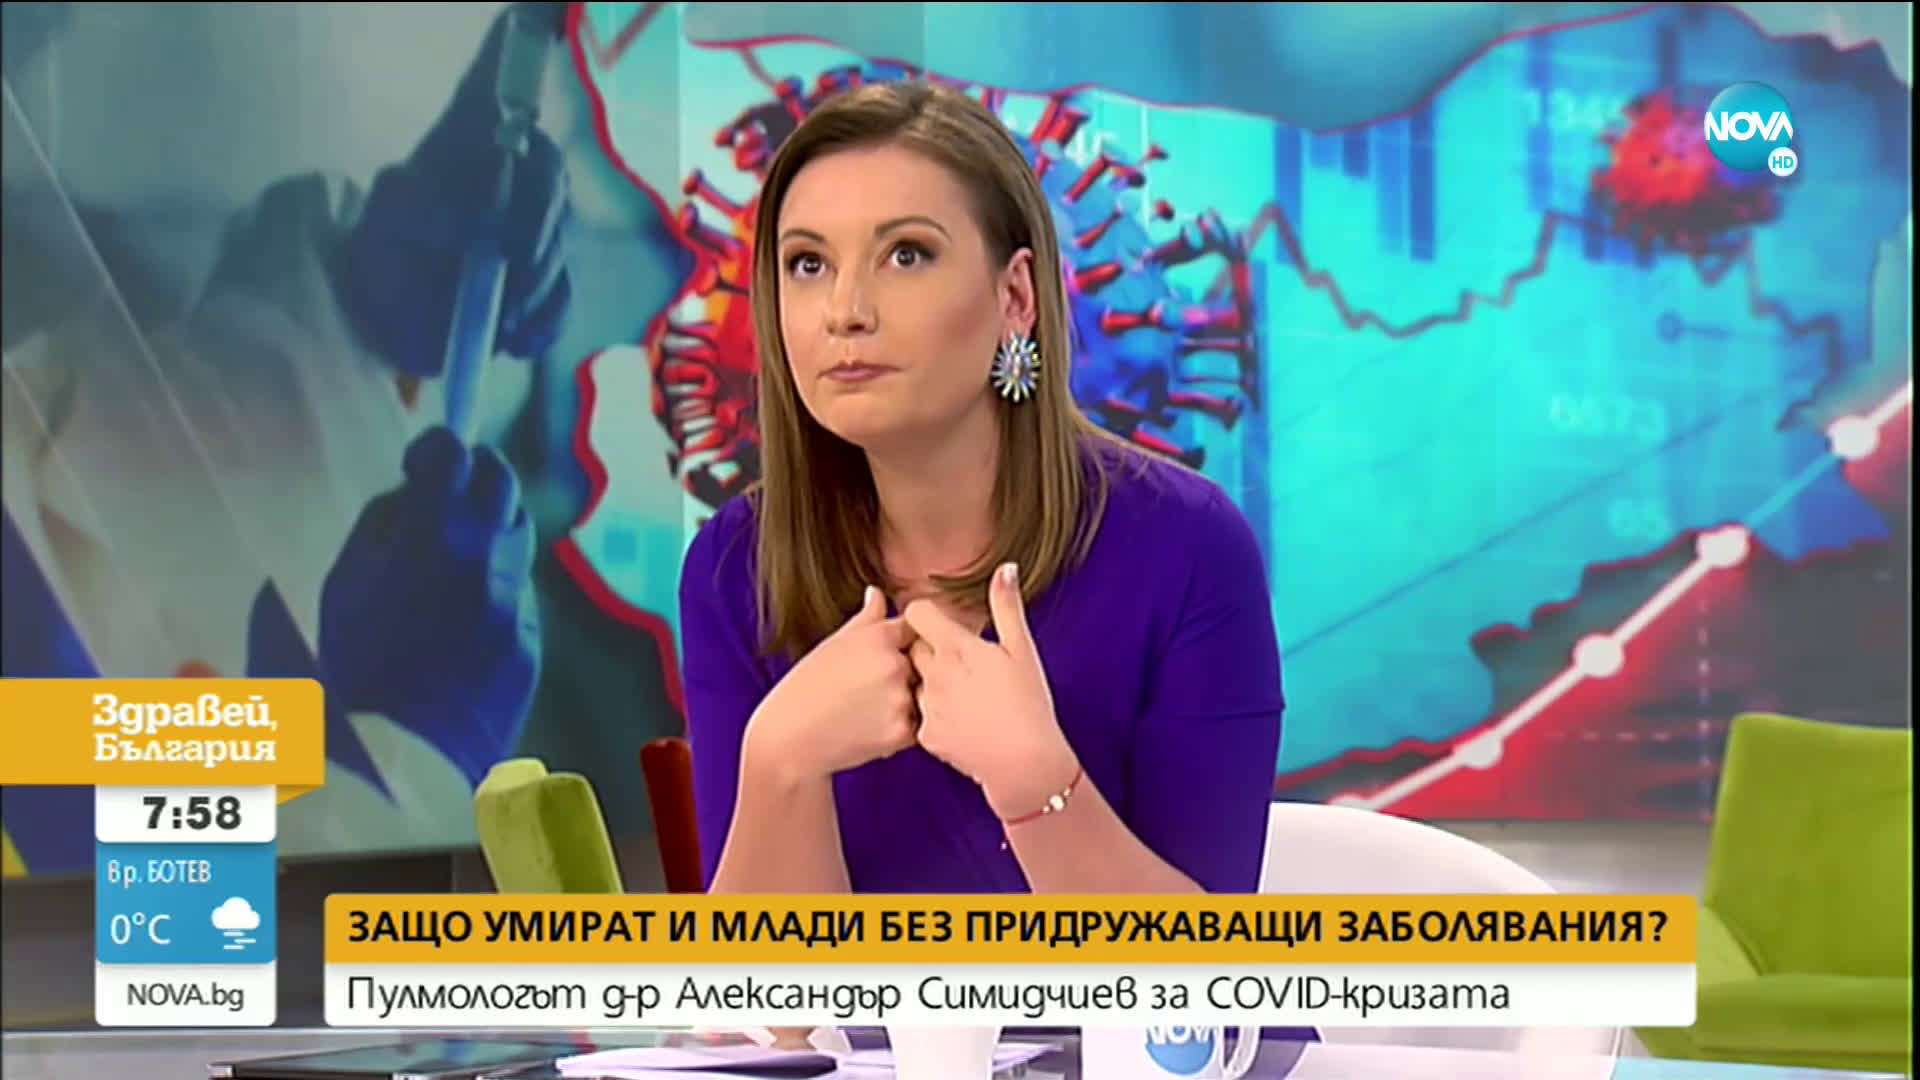 Д-р Симидчиев: Ако имате оплаквания, вероятността да имате коронавирус е голяма